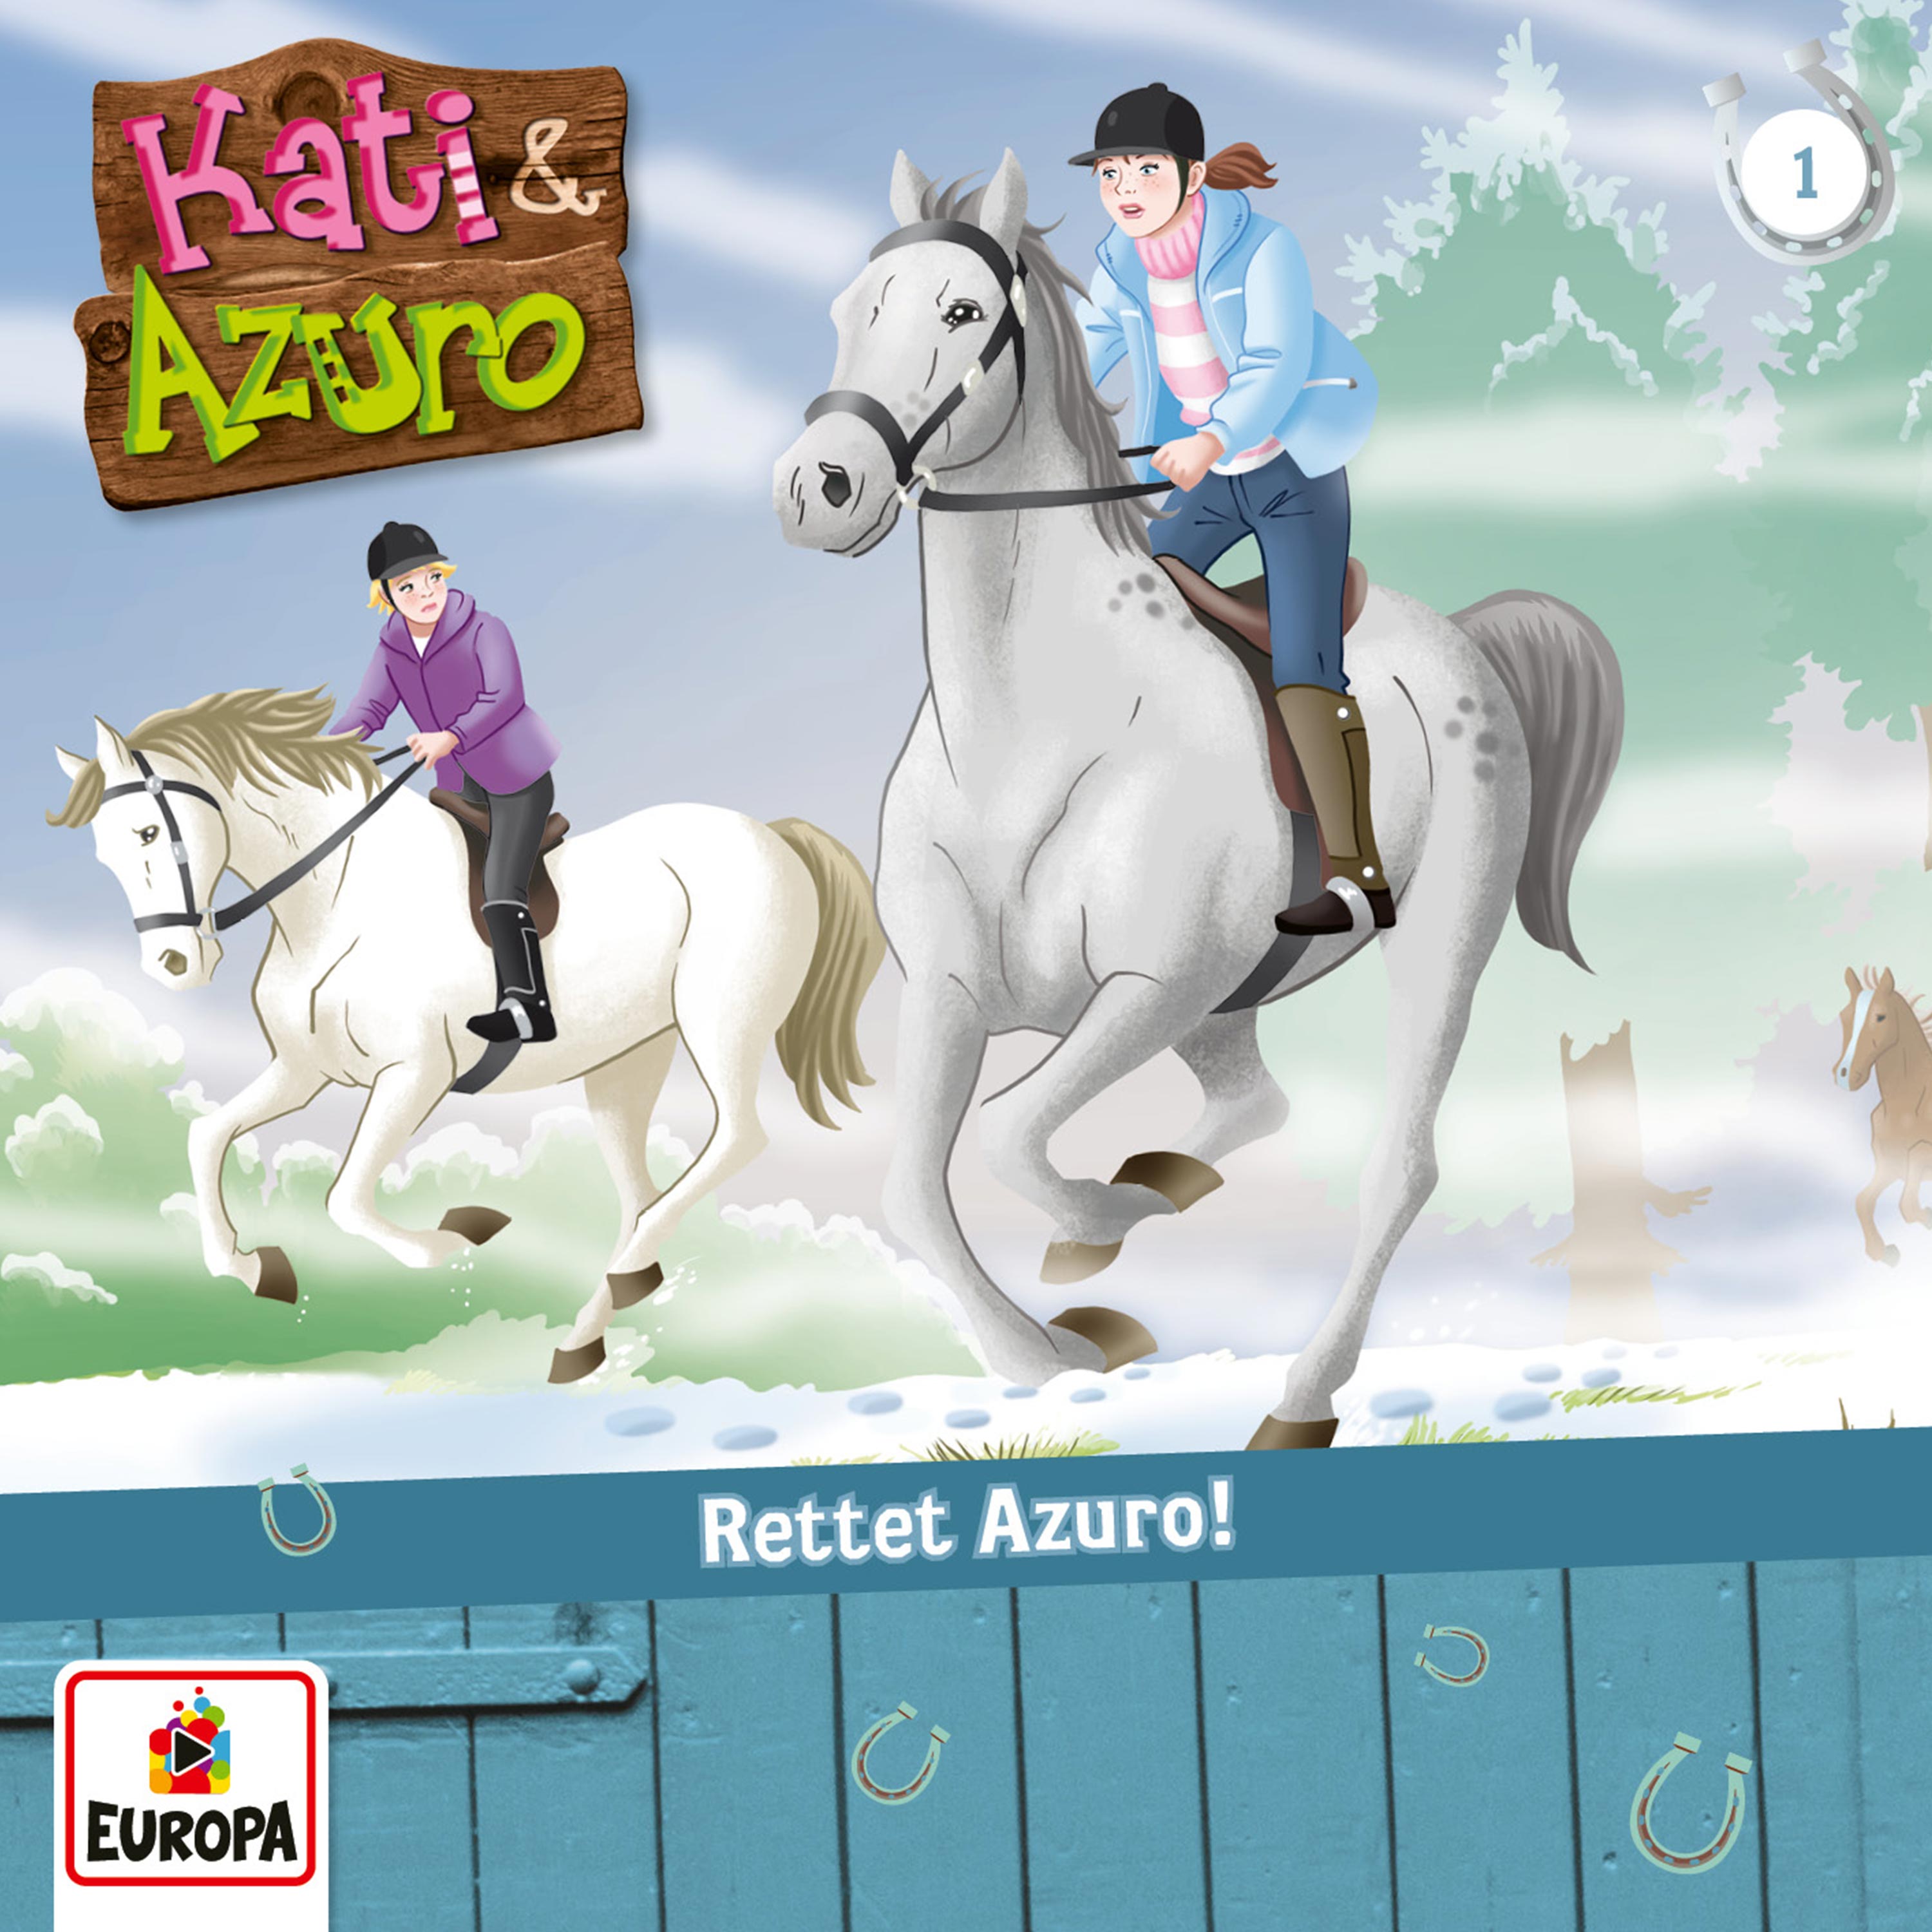 Kati & Azuro: Rettet Azuro!